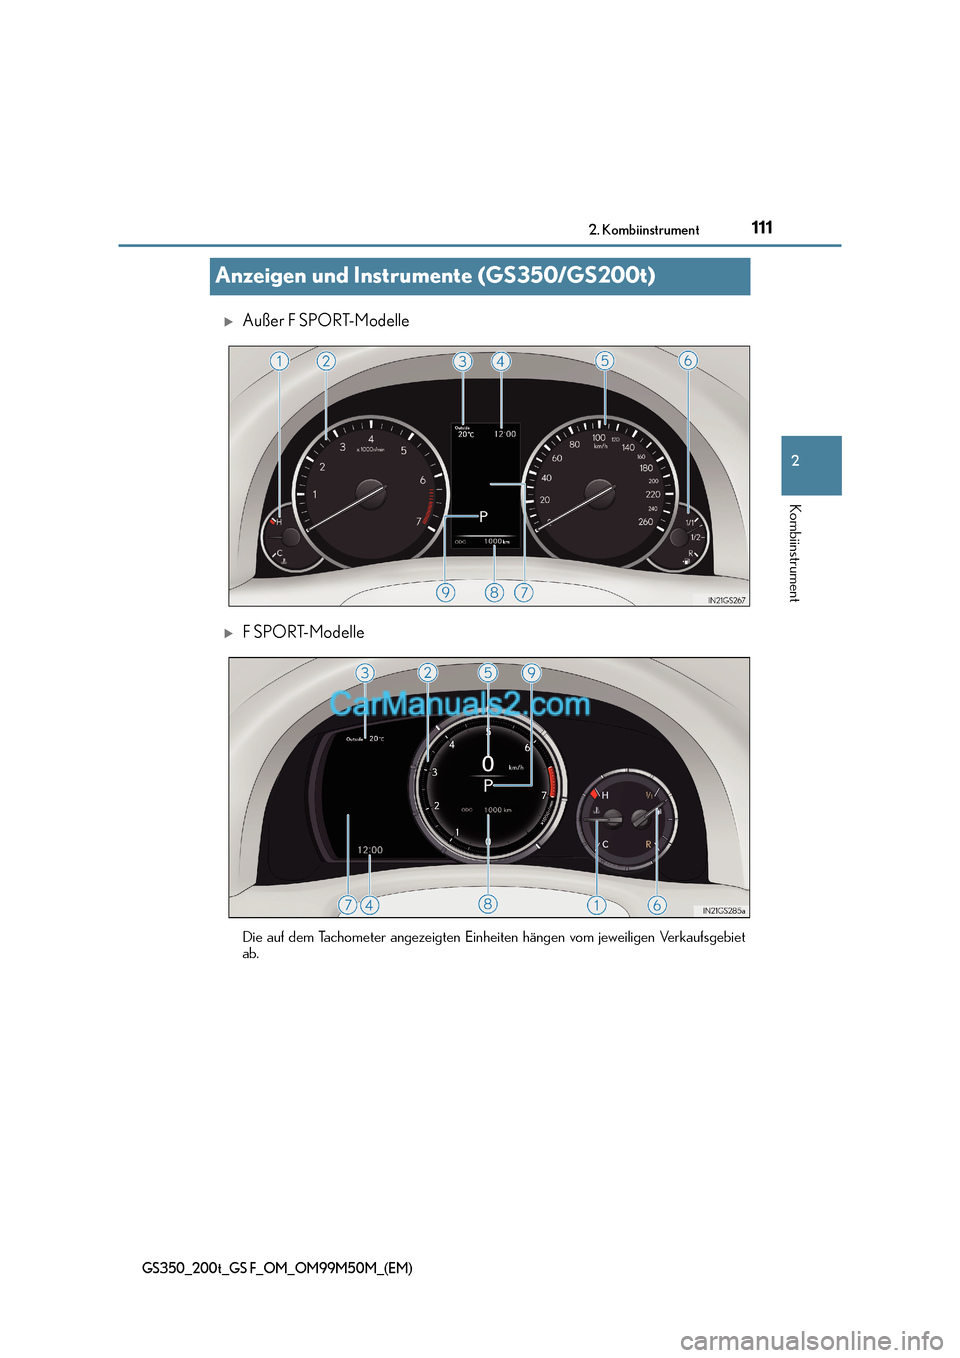 Lexus GS F 2016  Betriebsanleitung (in German) 111
2
2. Kombiinstrument
Kombiinstrument
GS350_200t_GS F_OM_OM99M50M_(EM)
Anzeigen und Instrumente (GS350/GS200t)
�XAußer F SPORT-Modelle
�XF SPORT-Modelle
Die auf dem Tachometer angezeigten Einheite